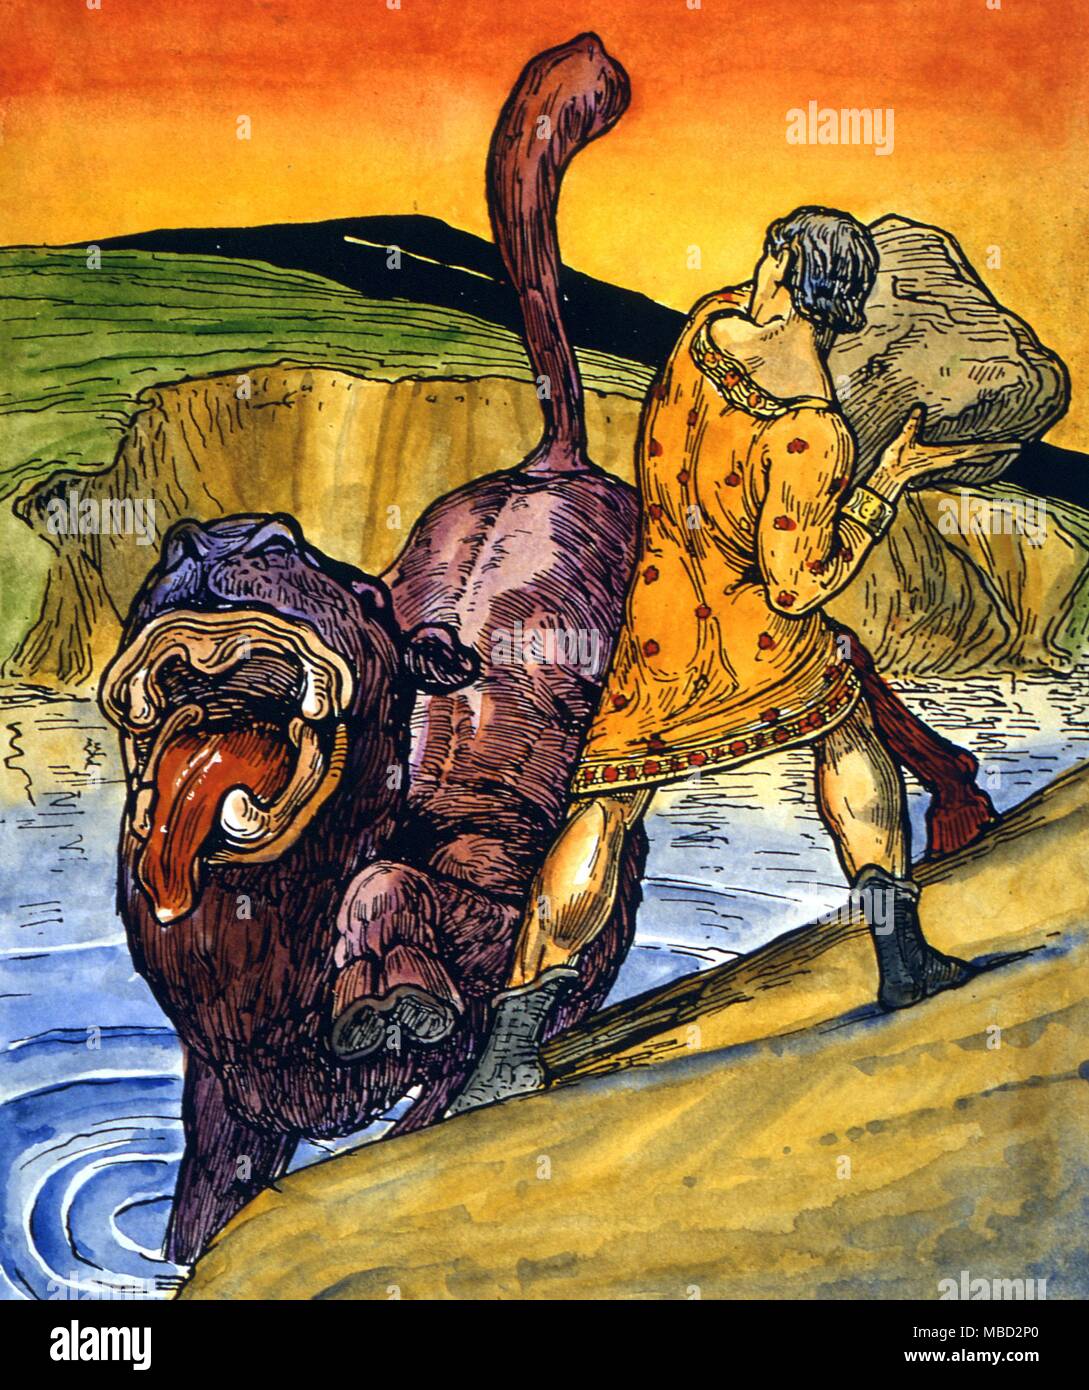 Monster - Leucocrote. Der gelbe Ritter, Auriol, erfüllt die monströse Leucocrote. Illustration von A.G. Macgregor zu Charles Squire' Die wunderbare Welt'. Stockfoto